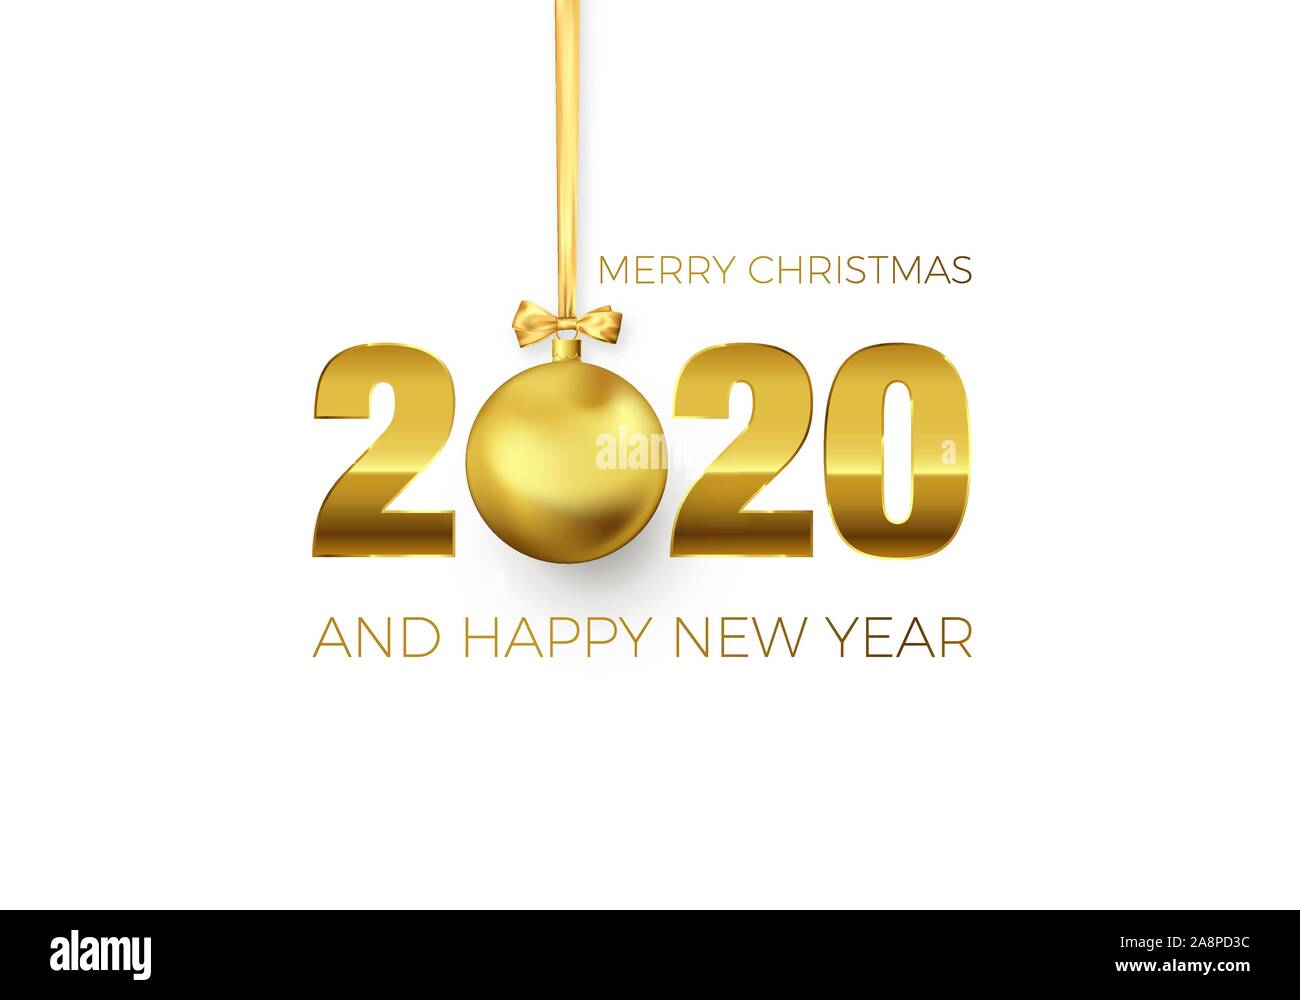 Neues Jahr Poster mit Begrüßungstext. Golden Christmas Ball anstelle von Null im Jahr 2020. Urlaub Dekoration Element für Banner oder Einladung. Vektor Stock Vektor